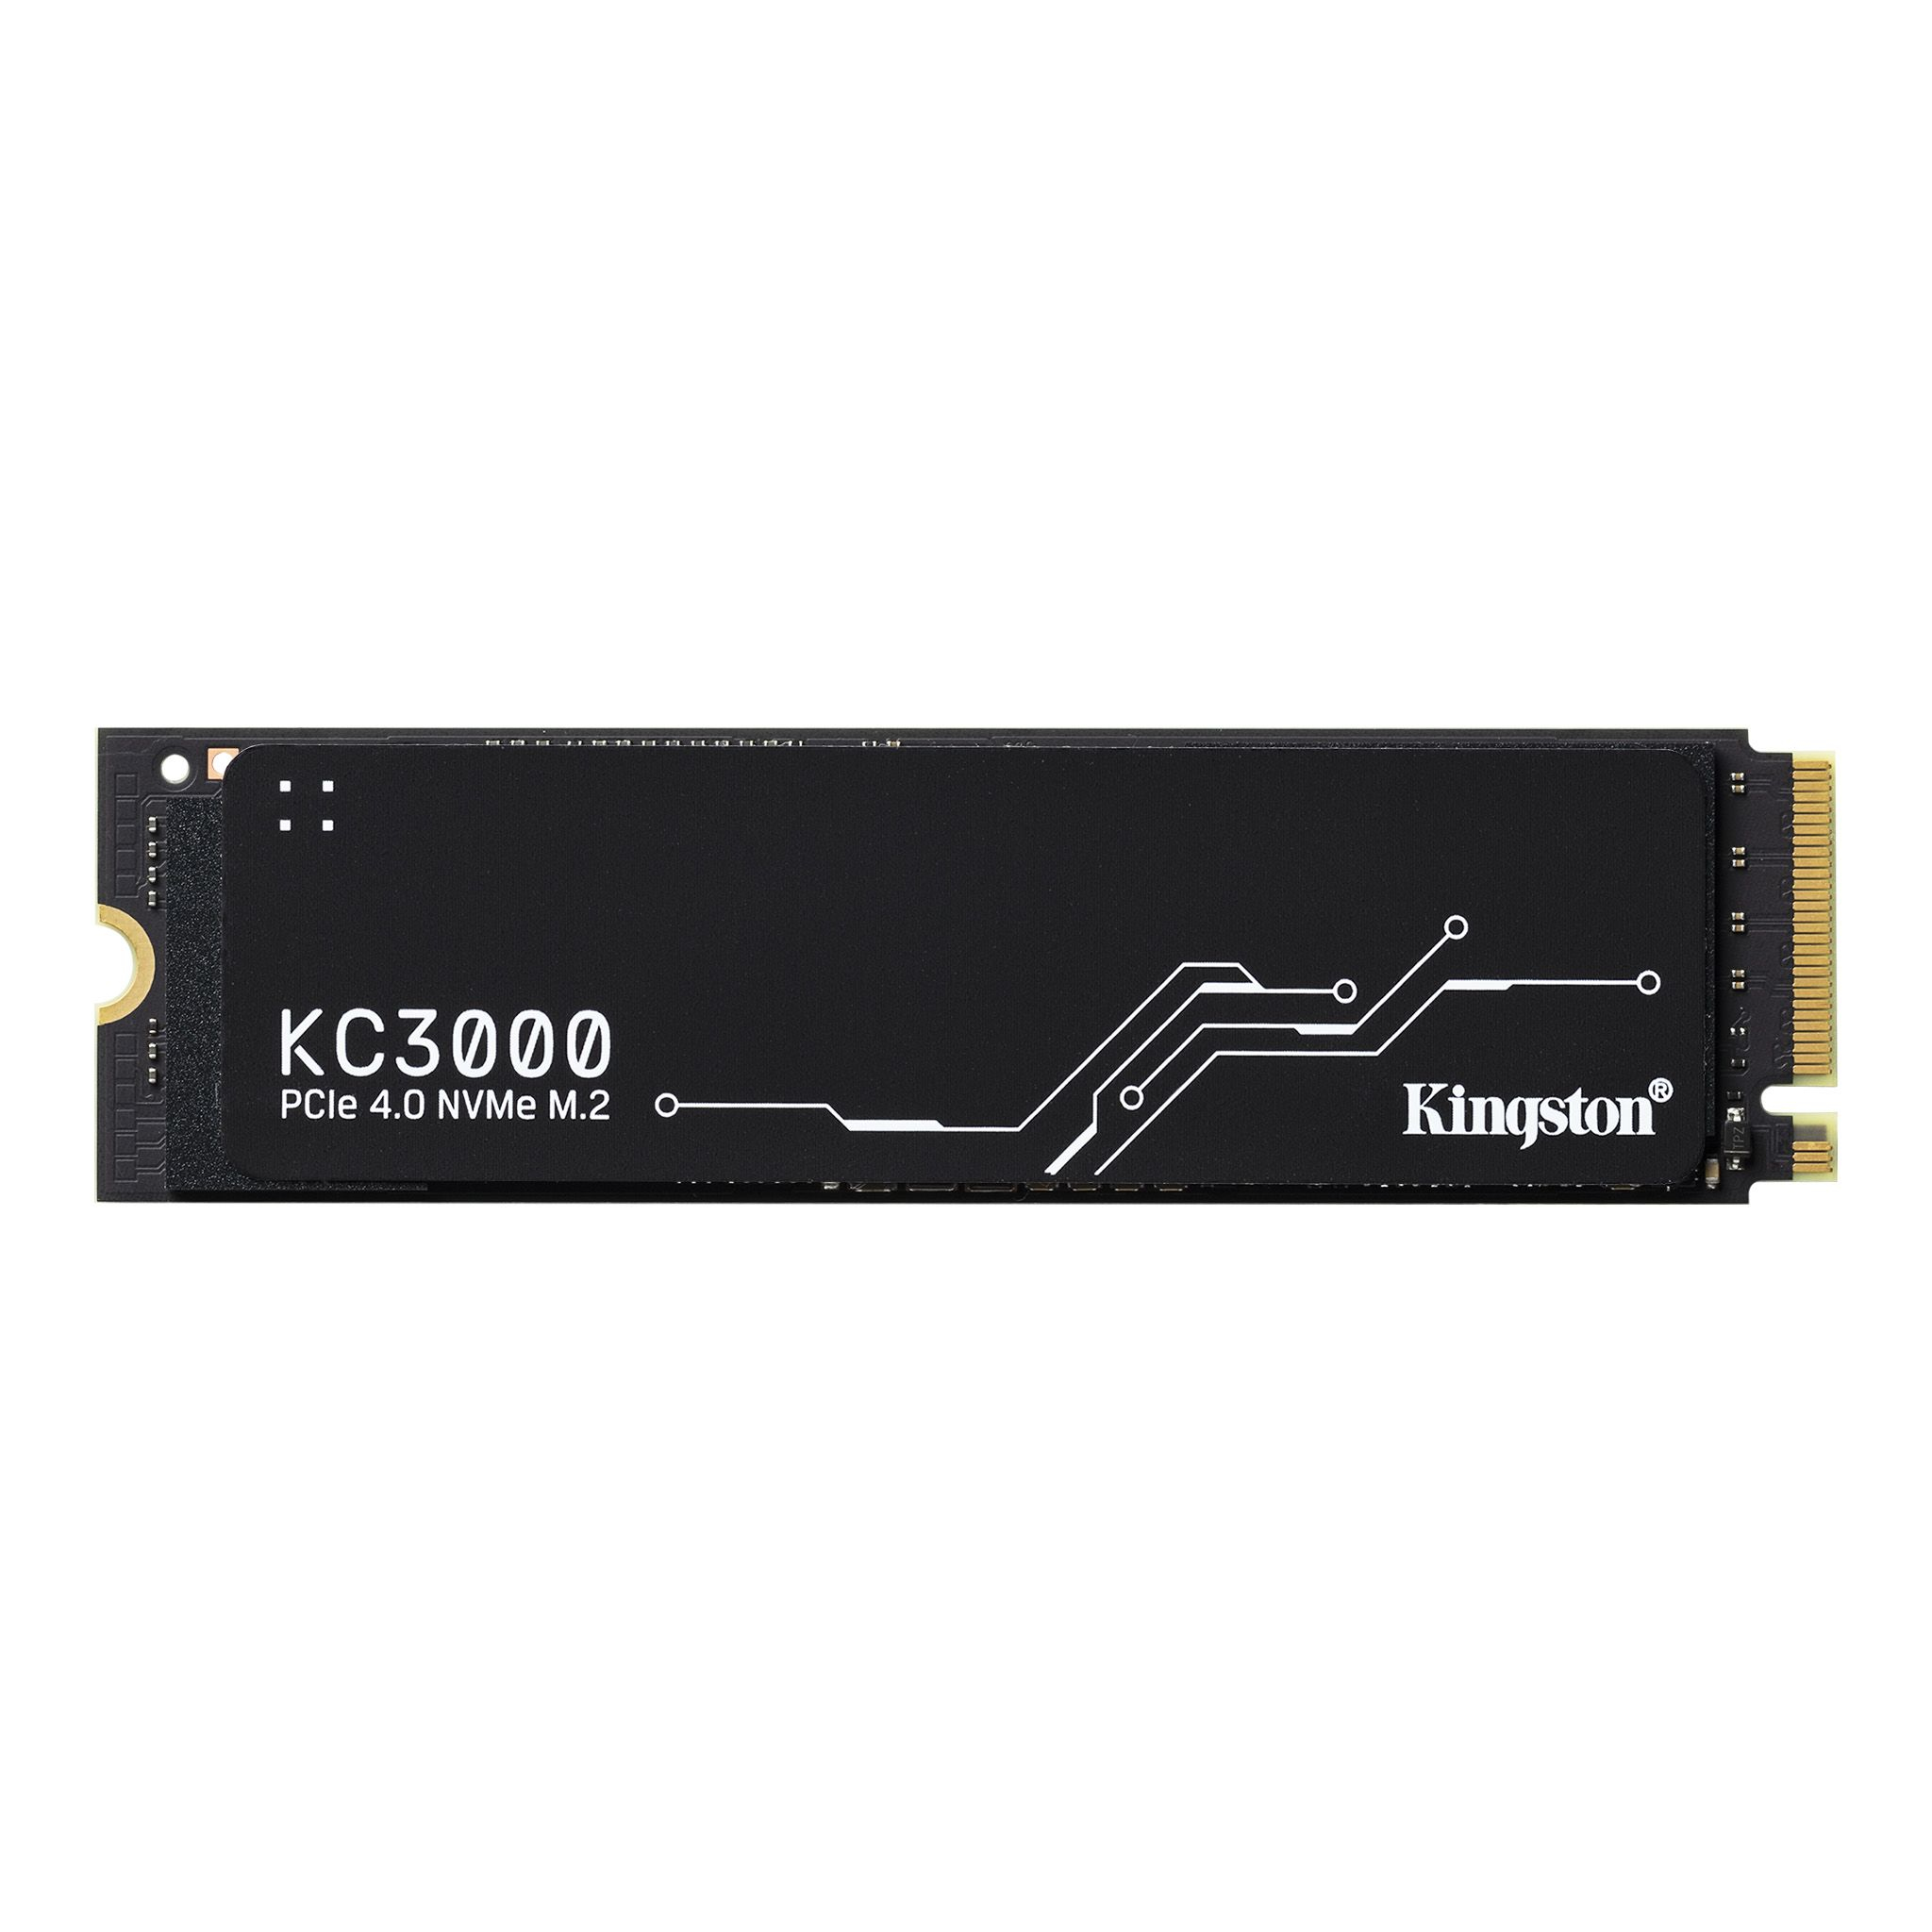 4096G KC3000 PCIe 4.0 NVMe M.2 SSD